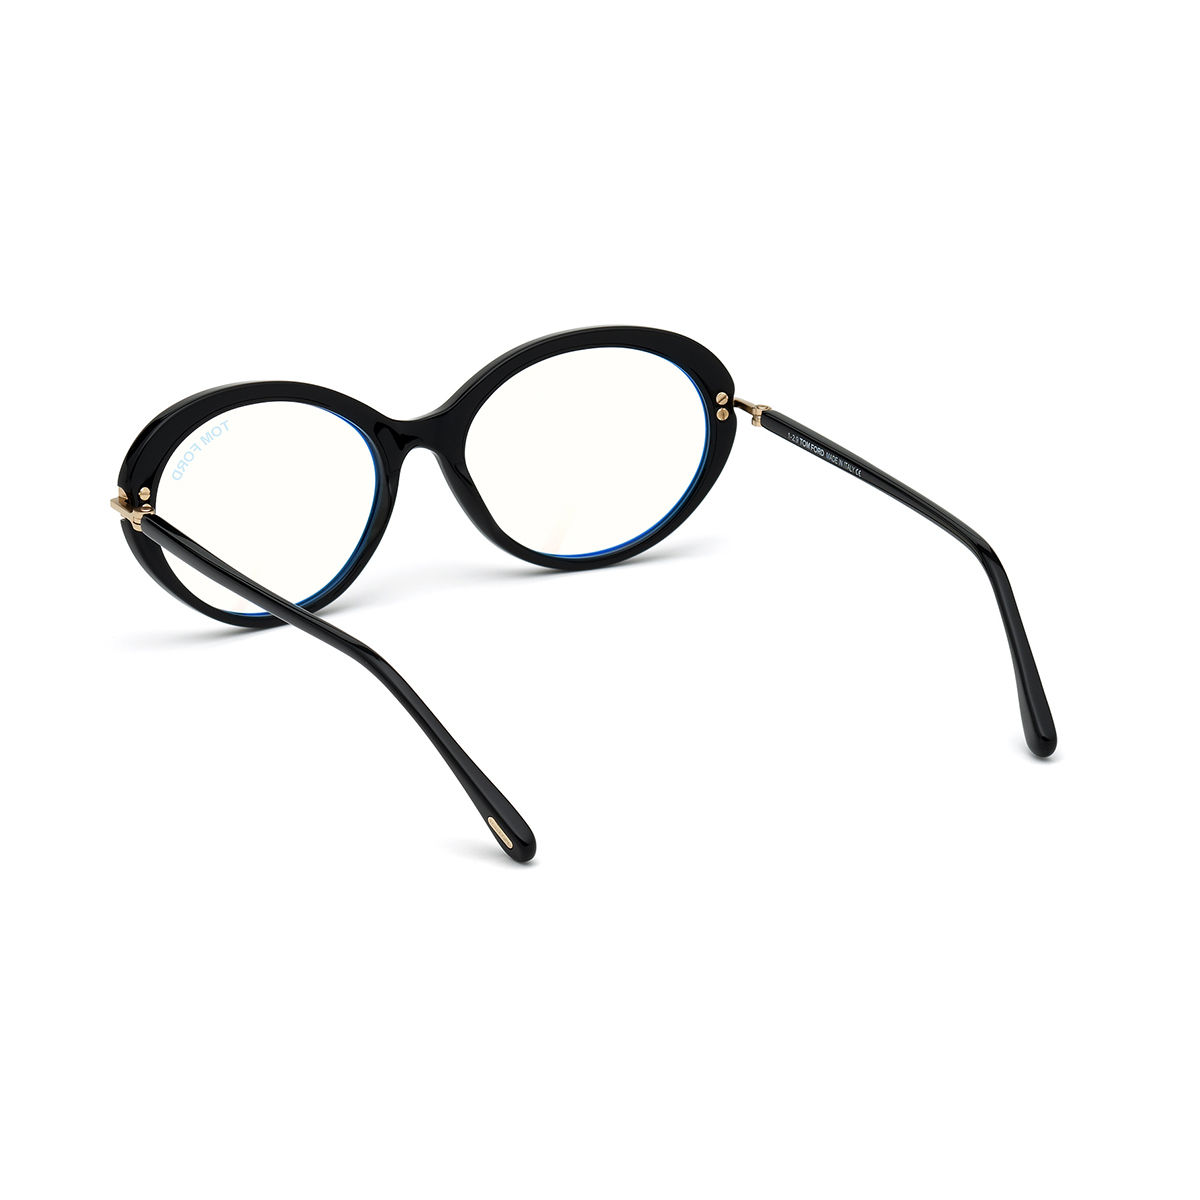 Tom Ford Sunglasses Black Plastic Eyeglasses FT5675-B 54 001: Buy Tom ...